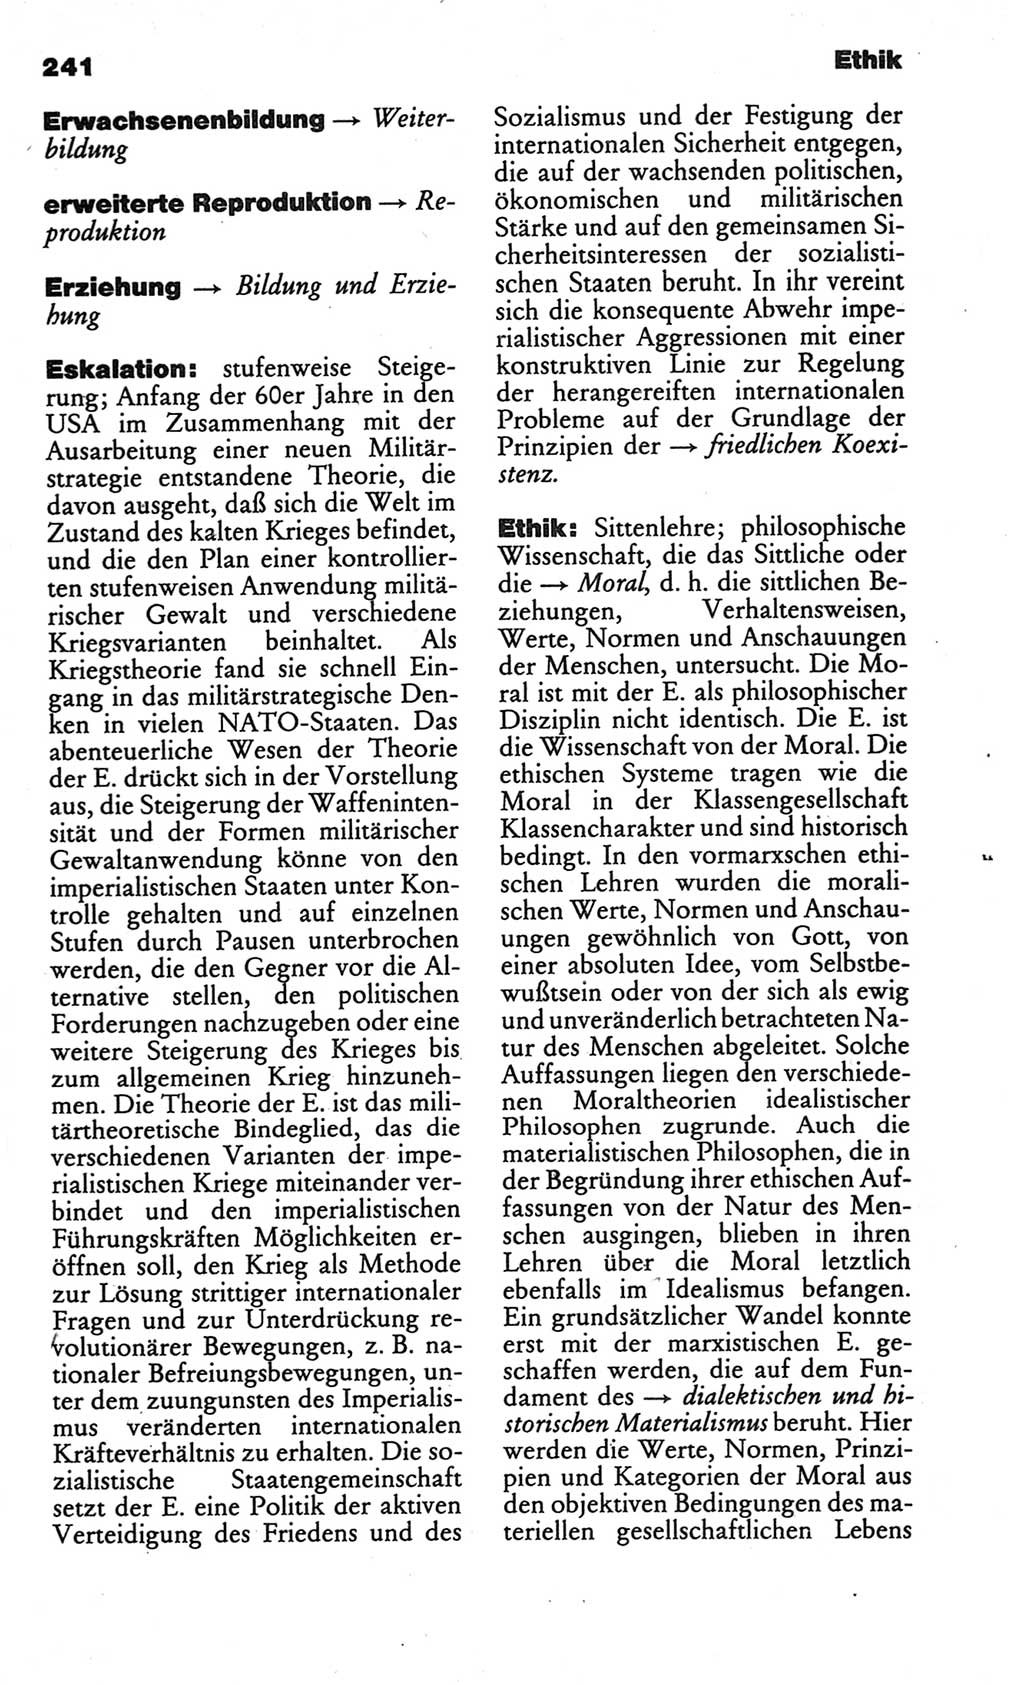 Kleines politisches Wörterbuch [Deutsche Demokratische Republik (DDR)] 1986, Seite 241 (Kl. pol. Wb. DDR 1986, S. 241)